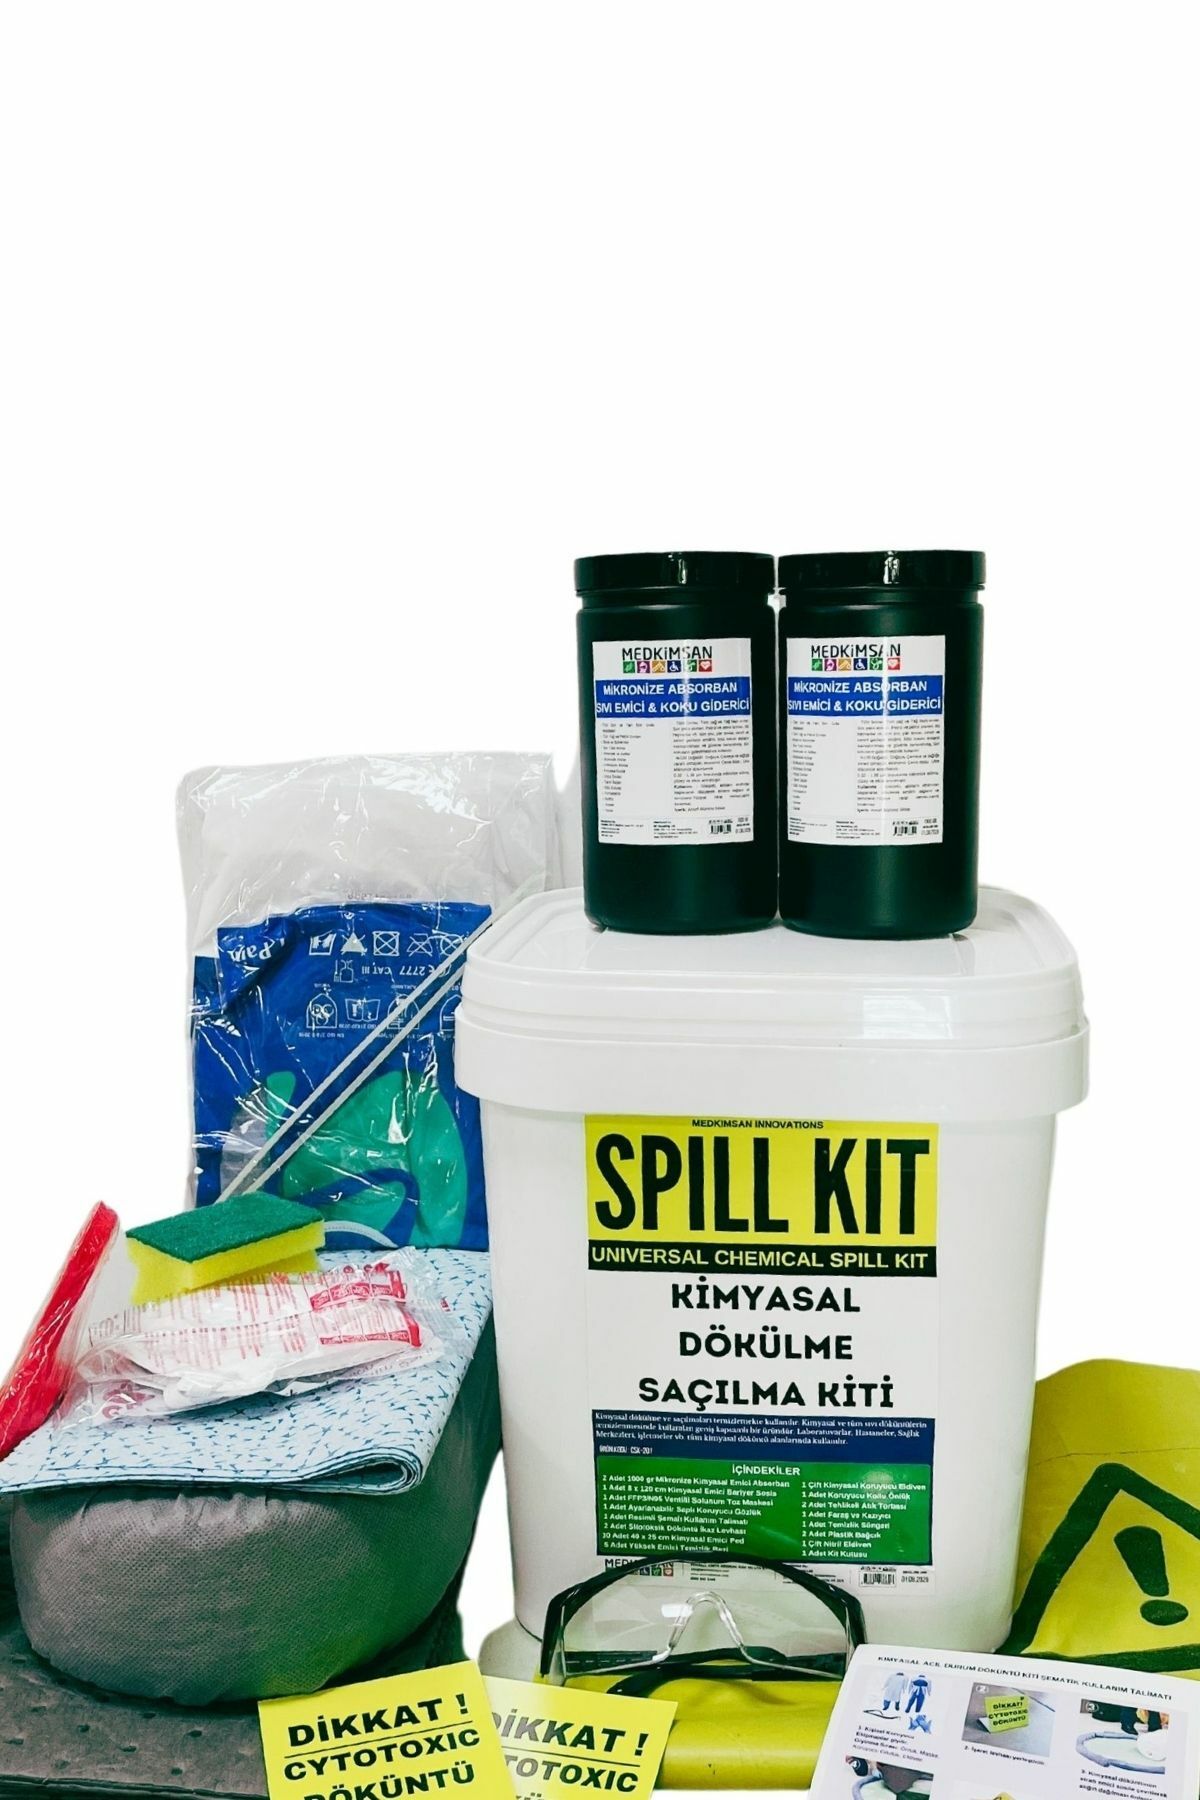 Kimyasal Acil Durum Kiti | Nötralizasyon Kiti | Dökülme / Saçılma Kiti | Chemical Spill Kit